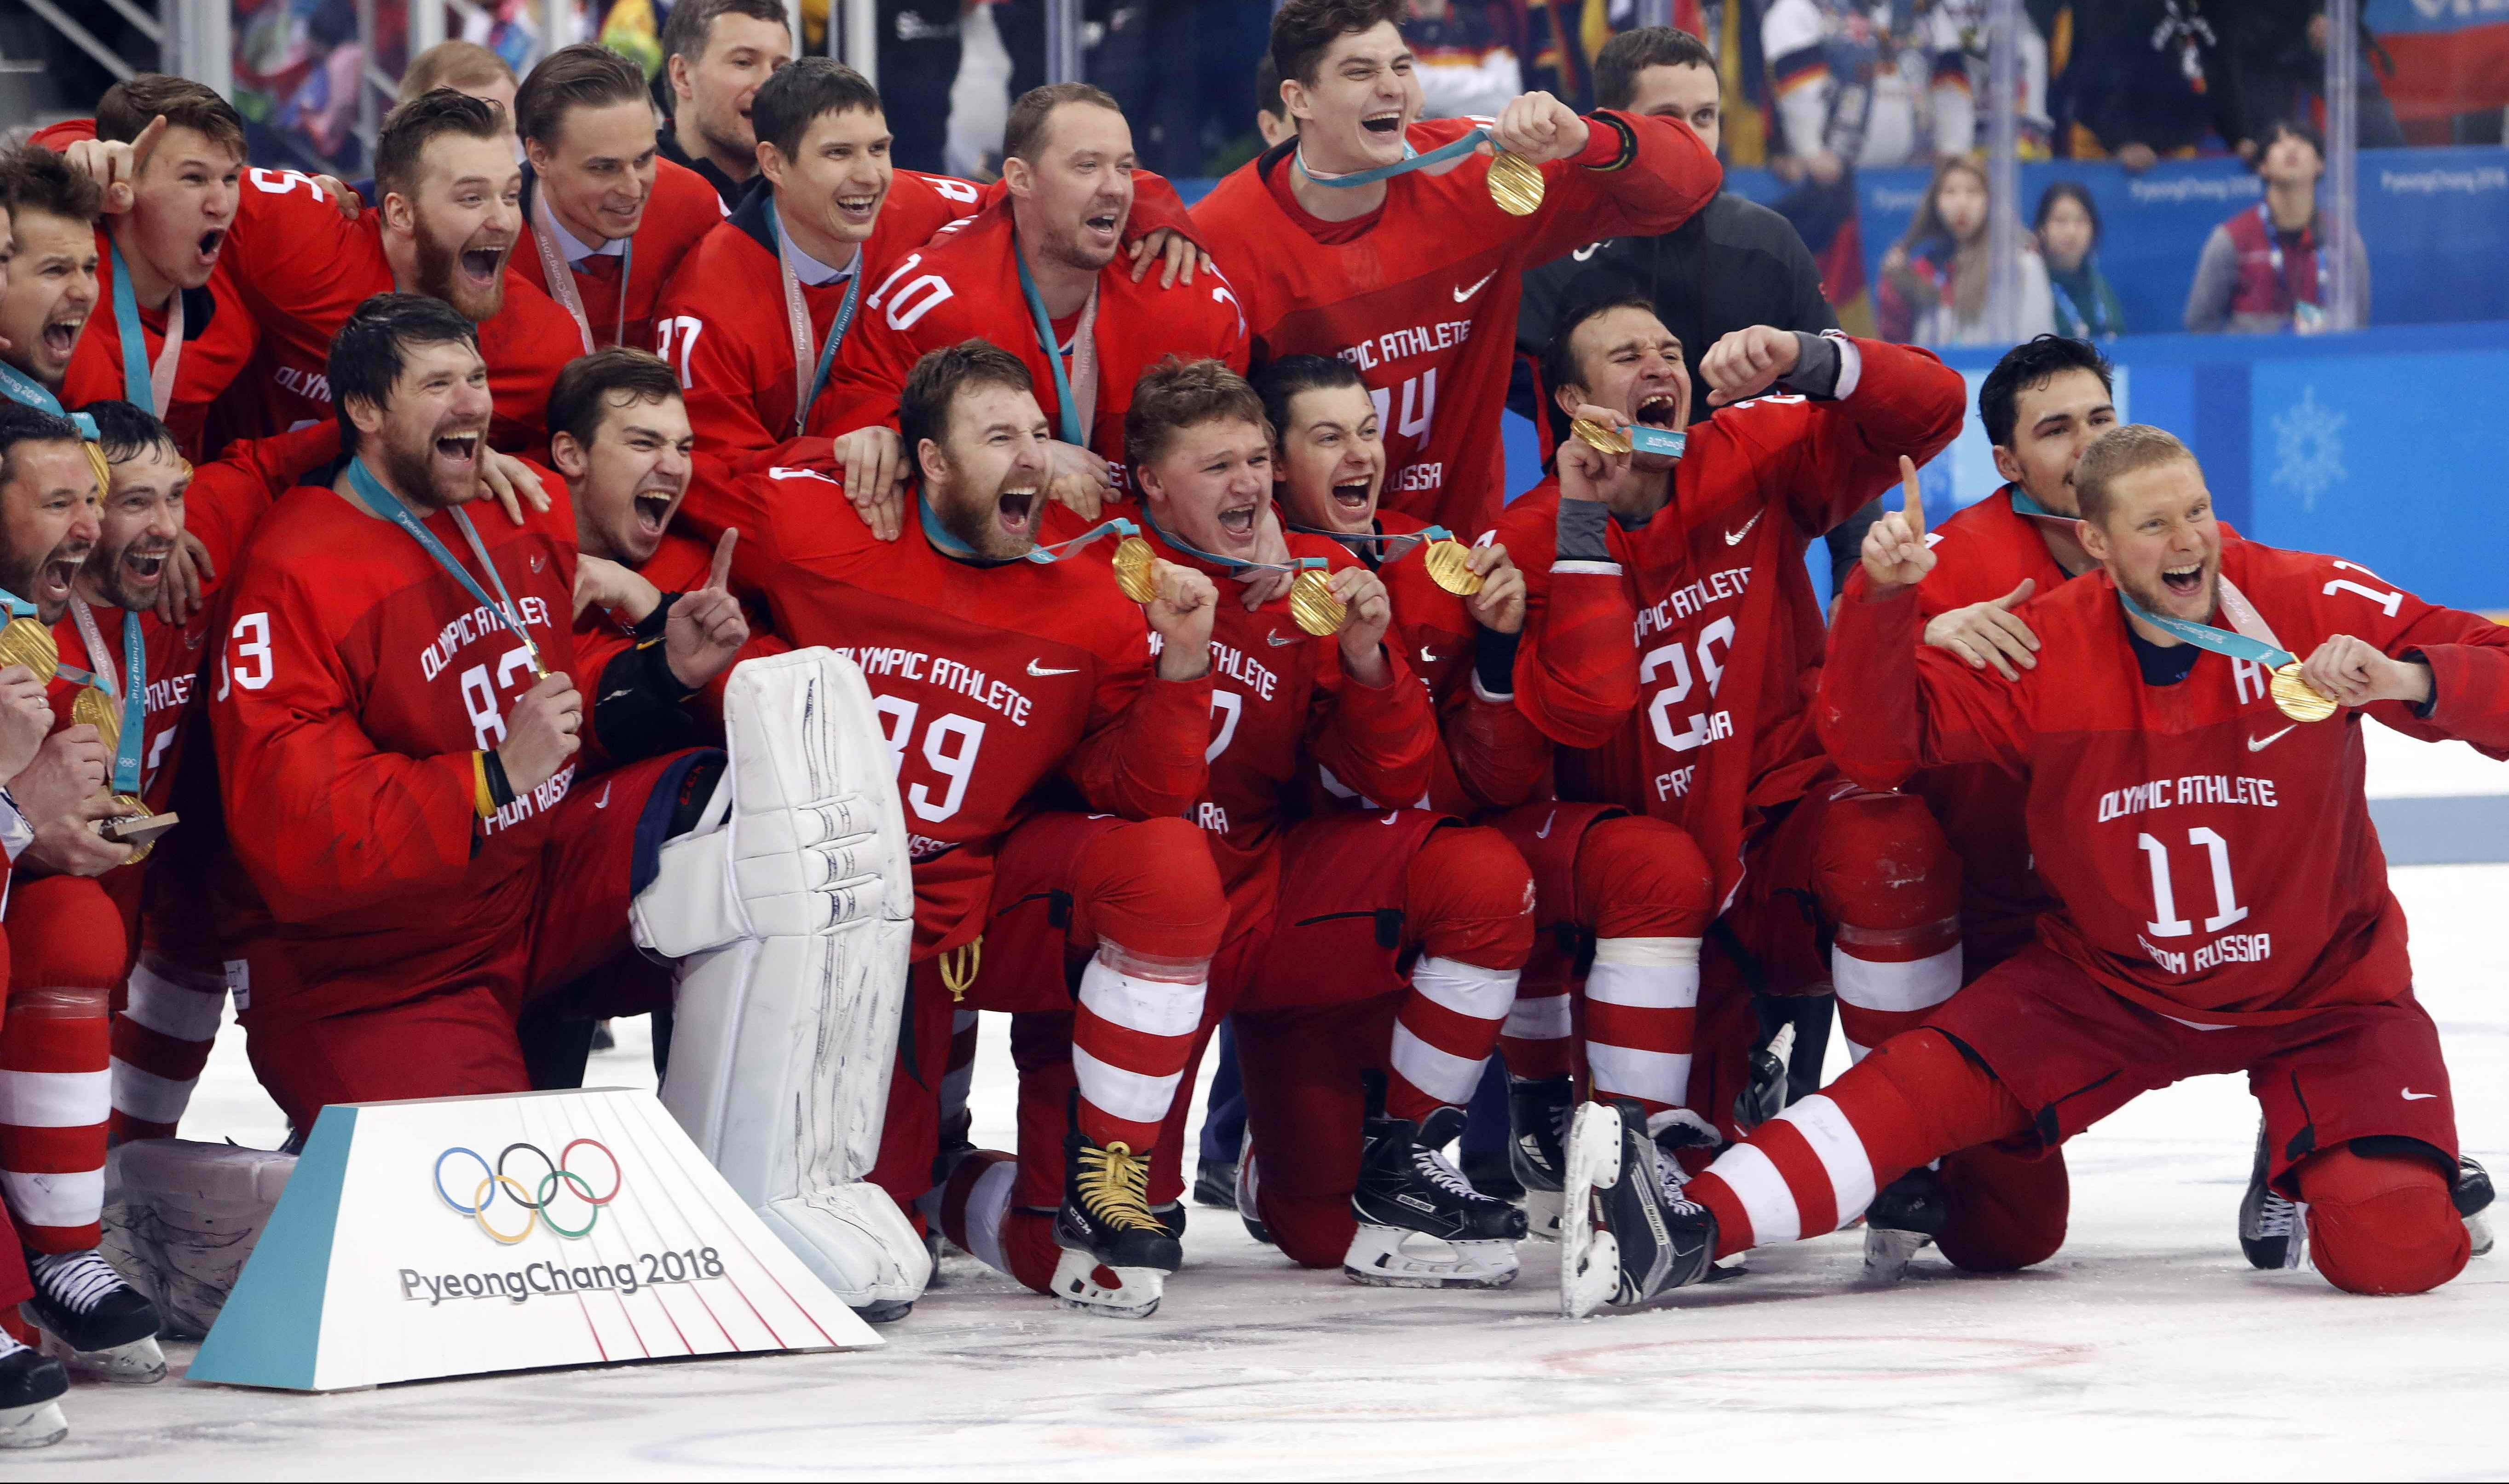 JAČI I OD NEPRAVDE! Ruski hokejaši osvojili zlato na Olimpijskim igrama!